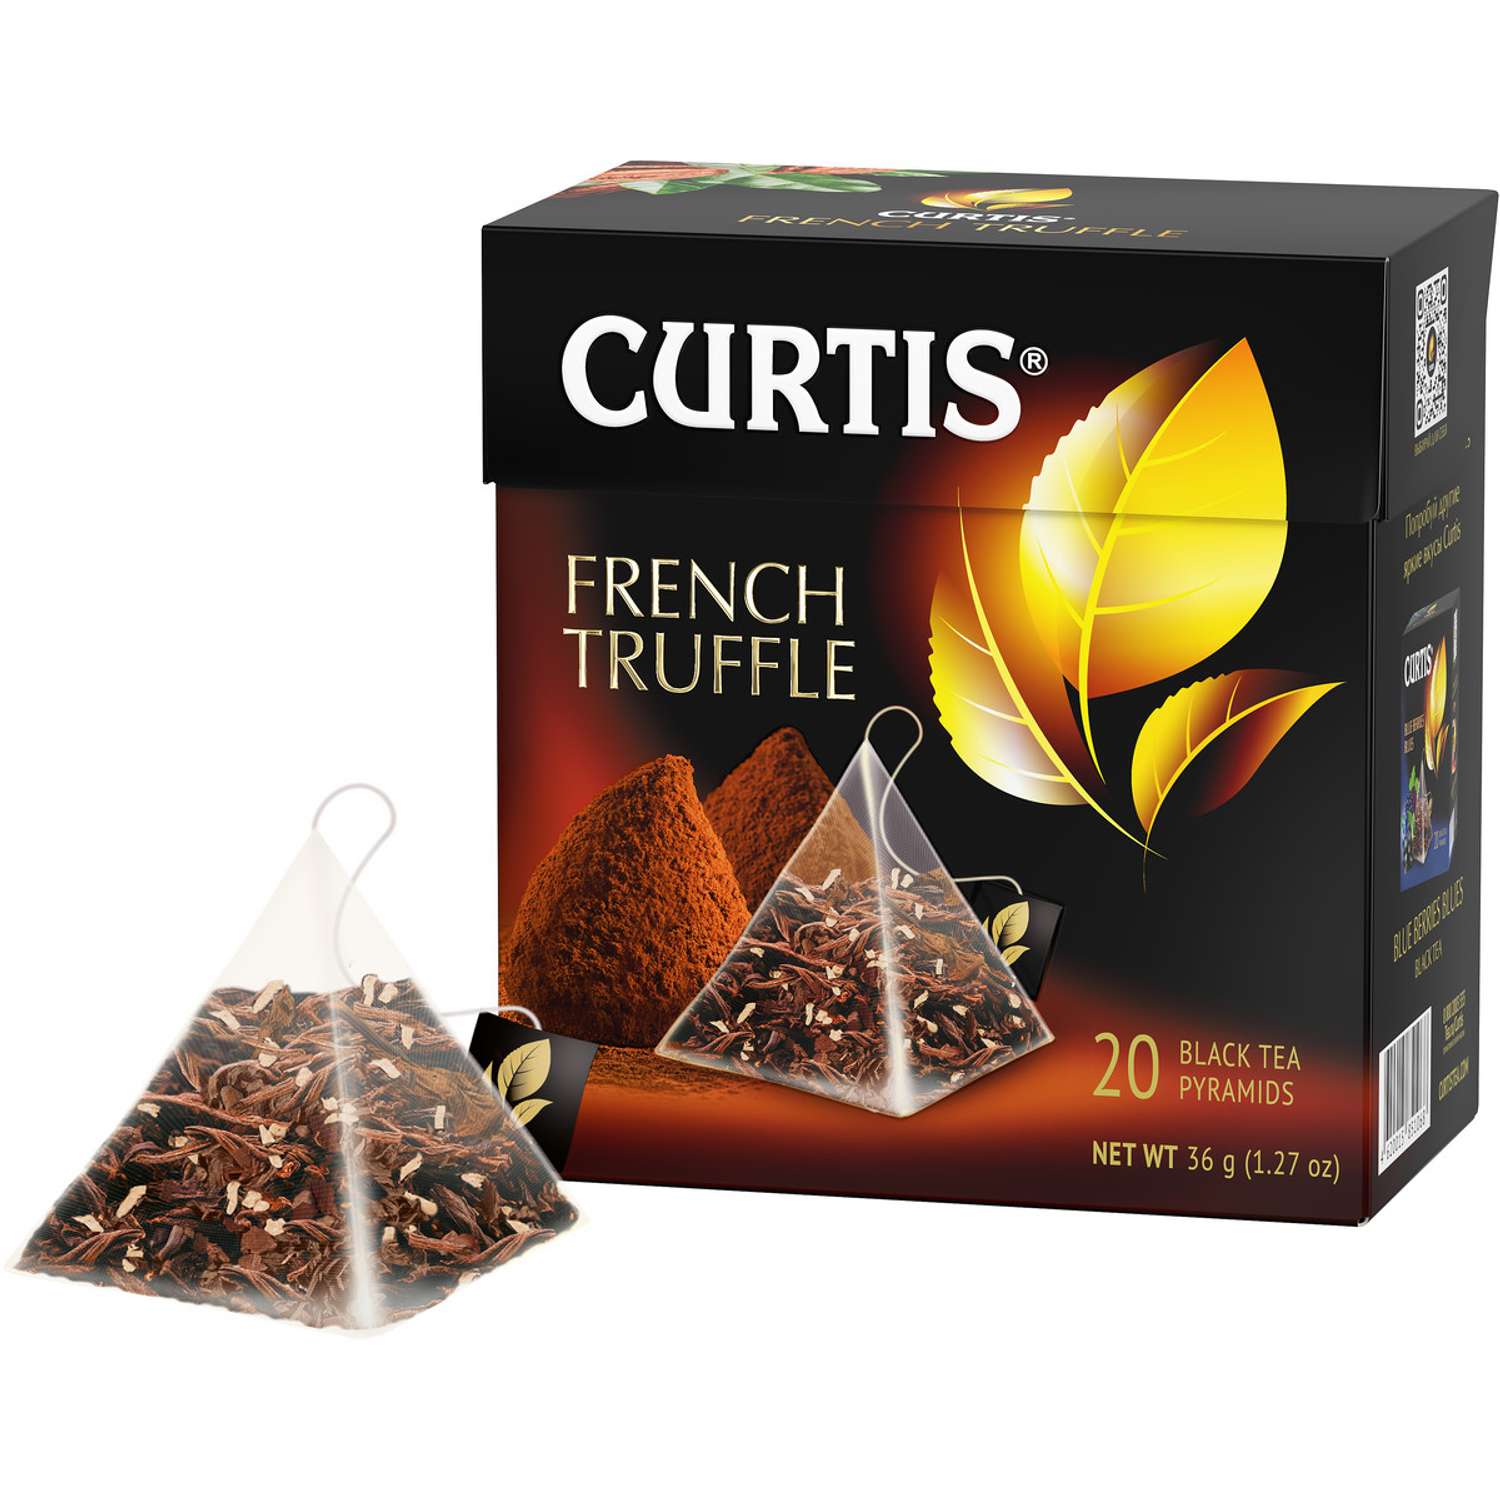 Чай черный Curtis French Truffle 20 пирамидок со вкусом нежного шоколадного трюфеля и кусочками кокоса - фото 3